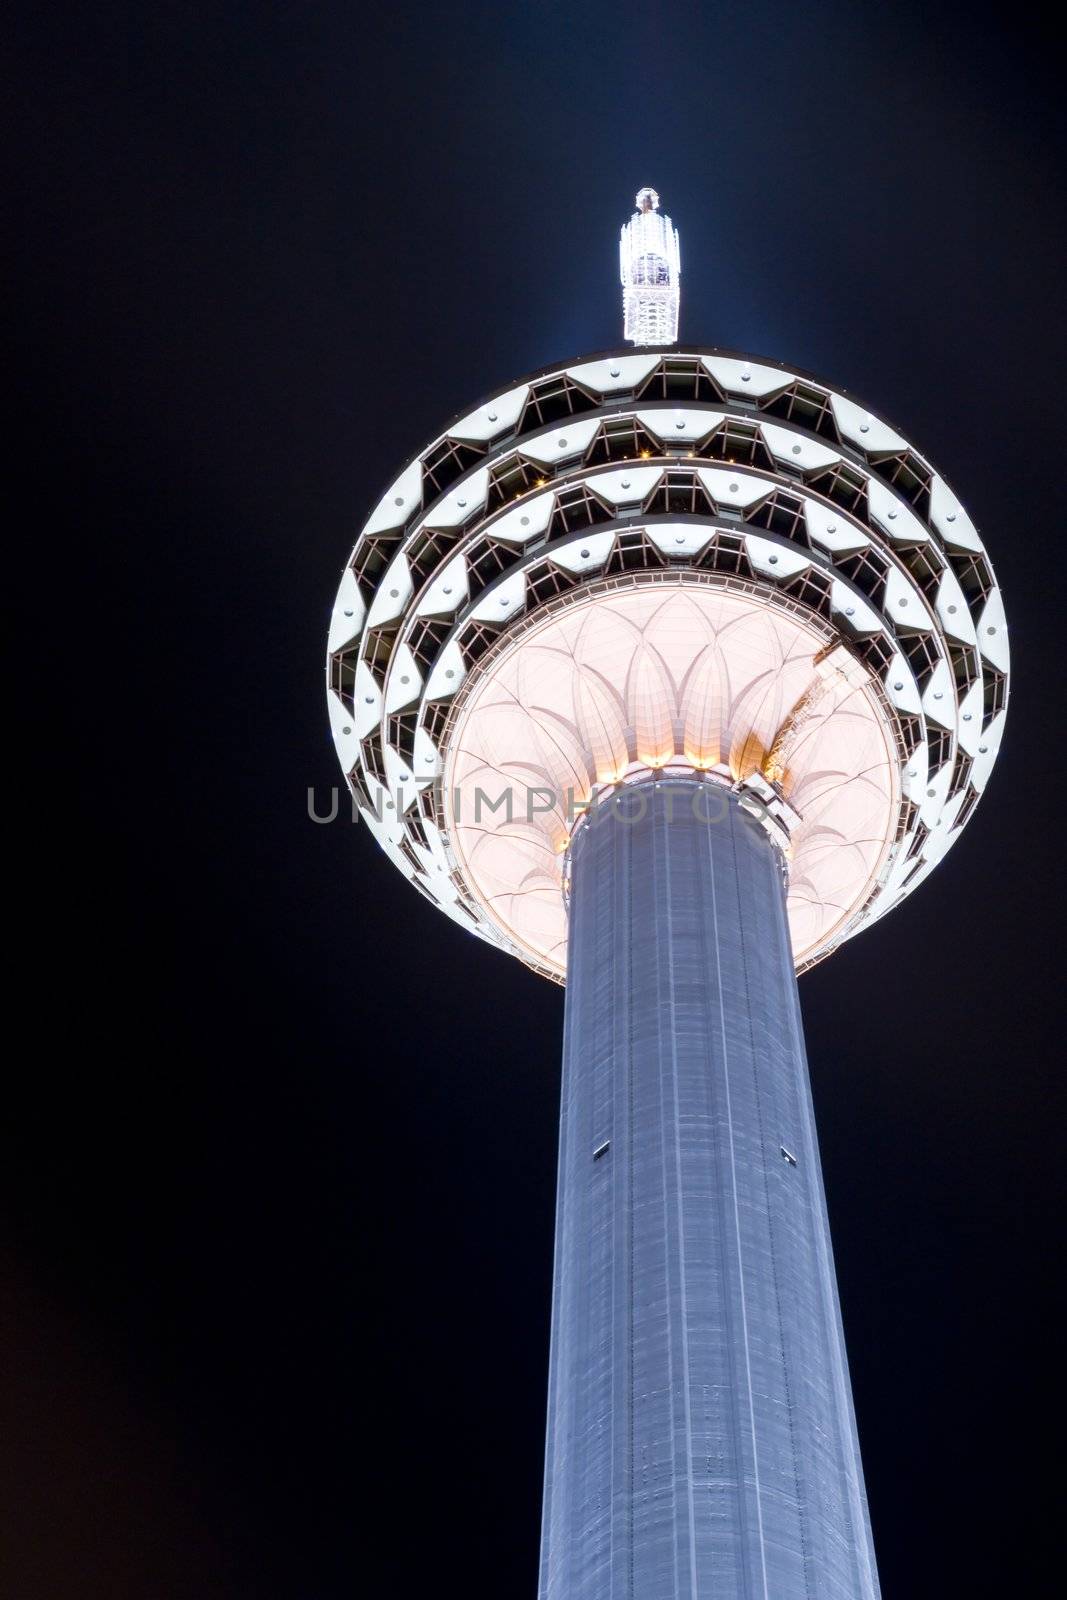 Telecommunication Tower at Night by shariffc